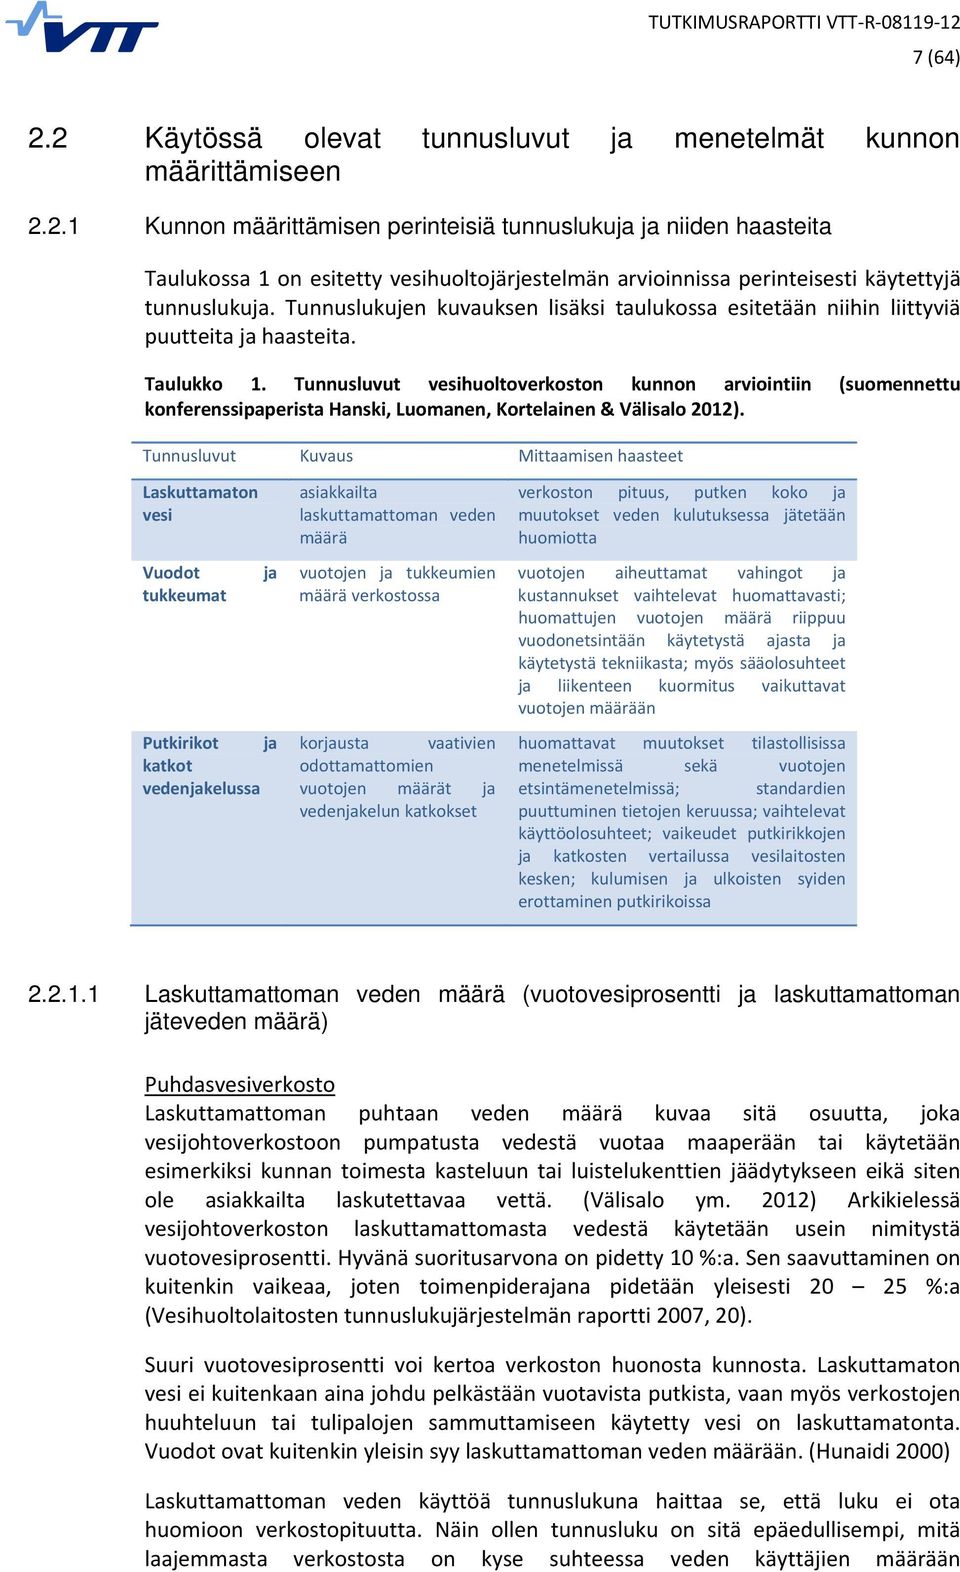 Tunnusluvut vesihuoltoverkoston kunnon arviointiin (suomennettu konferenssipaperista Hanski, Luomanen, Kortelainen & Välisalo 2012).